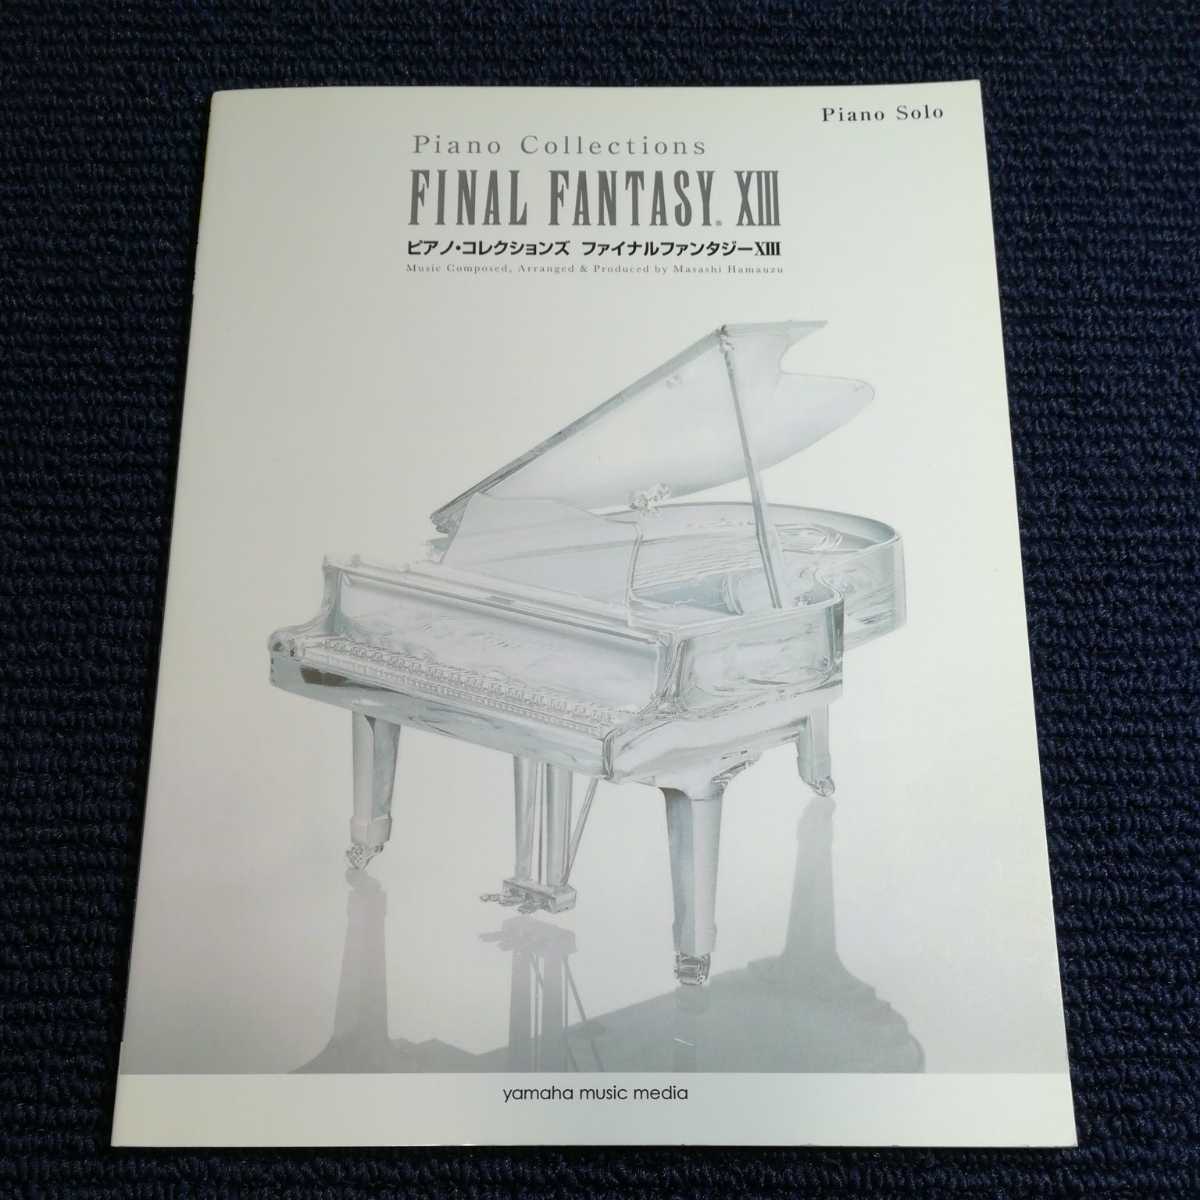 ファイナルファンタジー ⅩⅢ ピアノコレクションズ ピアノソロ 上級 FINAL FANTASY 楽譜